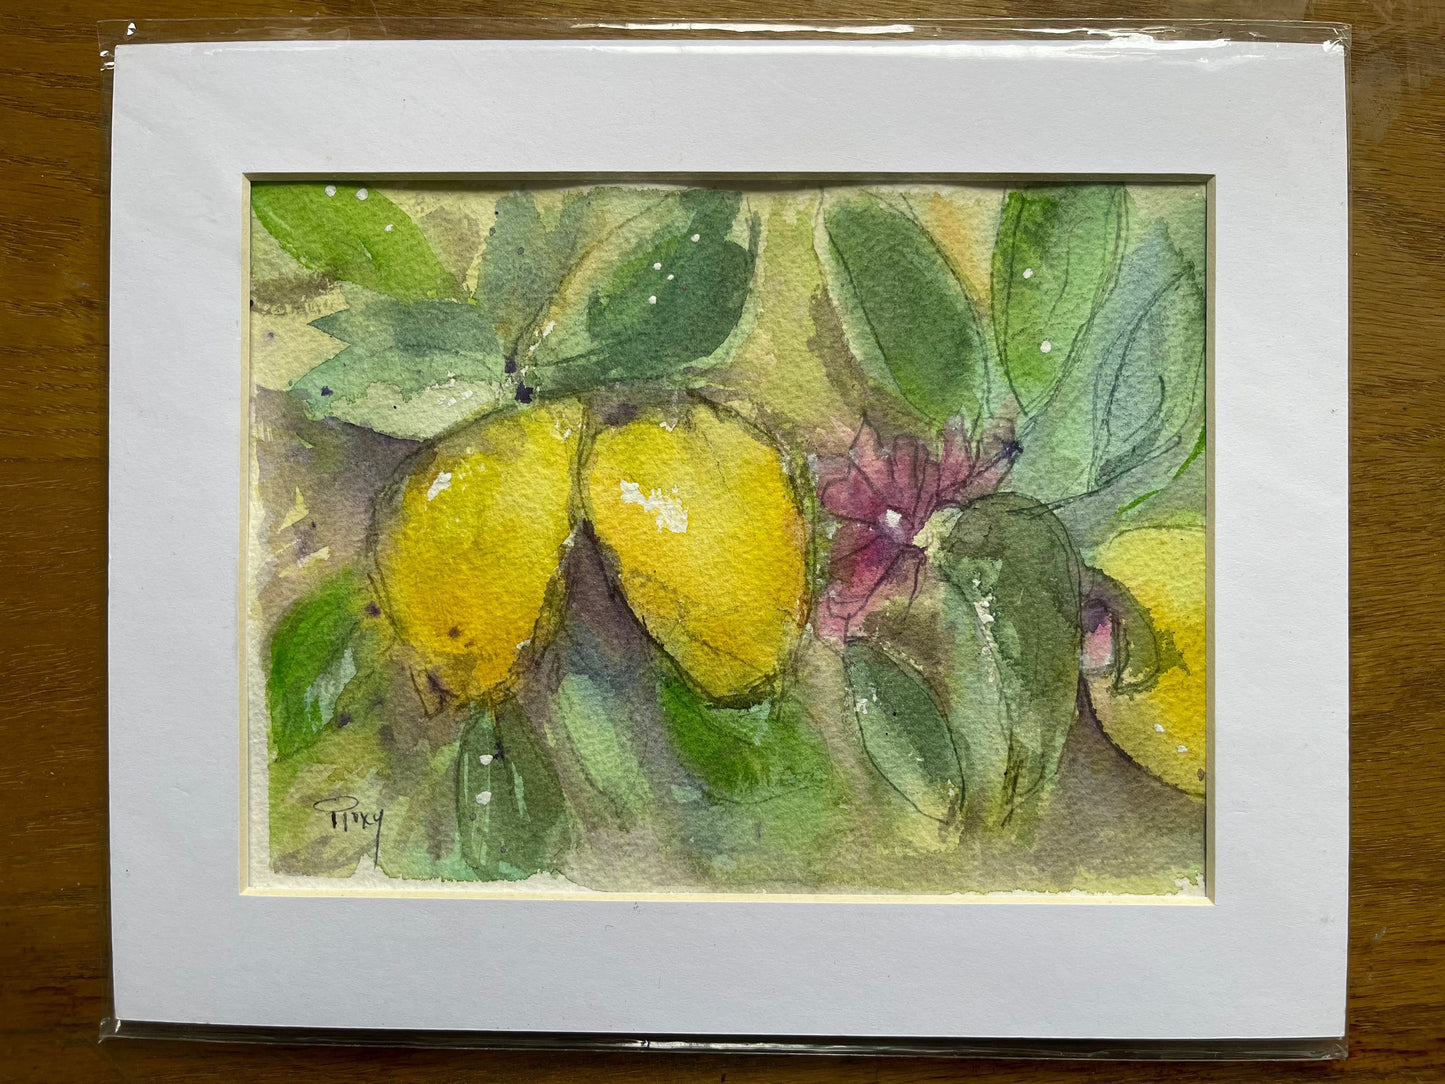 Citrons en vrac Aquarelle originale et peinture à la gouache 6x8